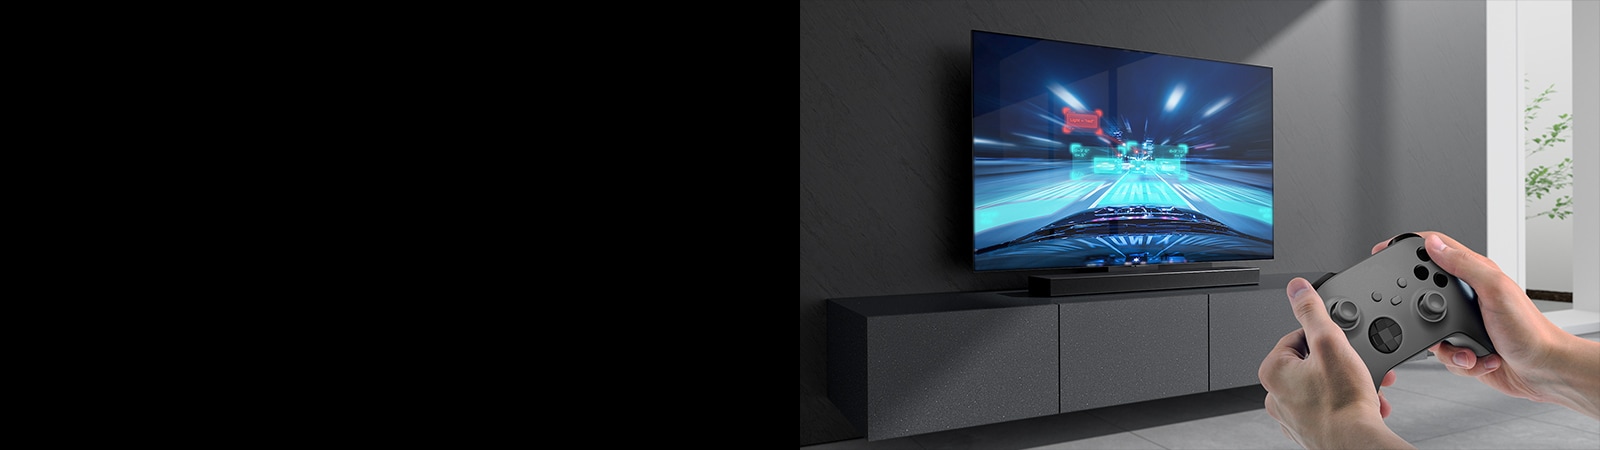 Zvukový panel je položený na skrinke, pričom na obrazovke televízora pripojeného k zvukovému panelu je zobrazená scéna zo závodnej hry. V pravom dolnom rohu obrázka dve ruky držia hernú konzolu.